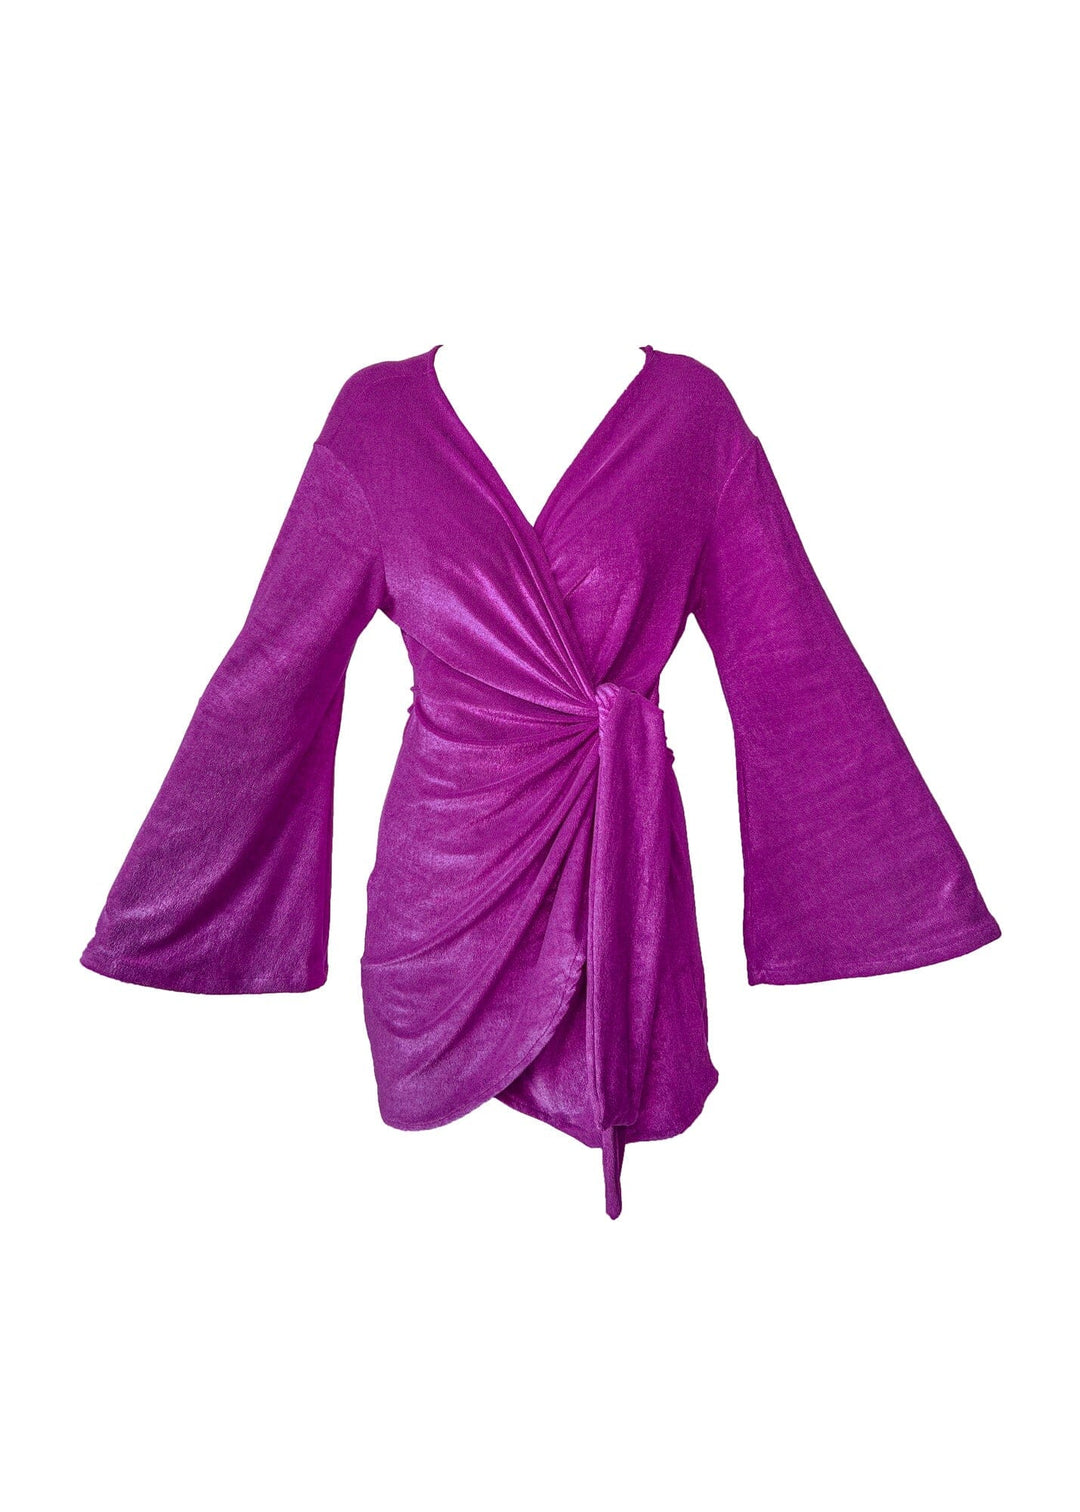 Vestido Celina - Atoalhado Magic Purple vestido celina PP 